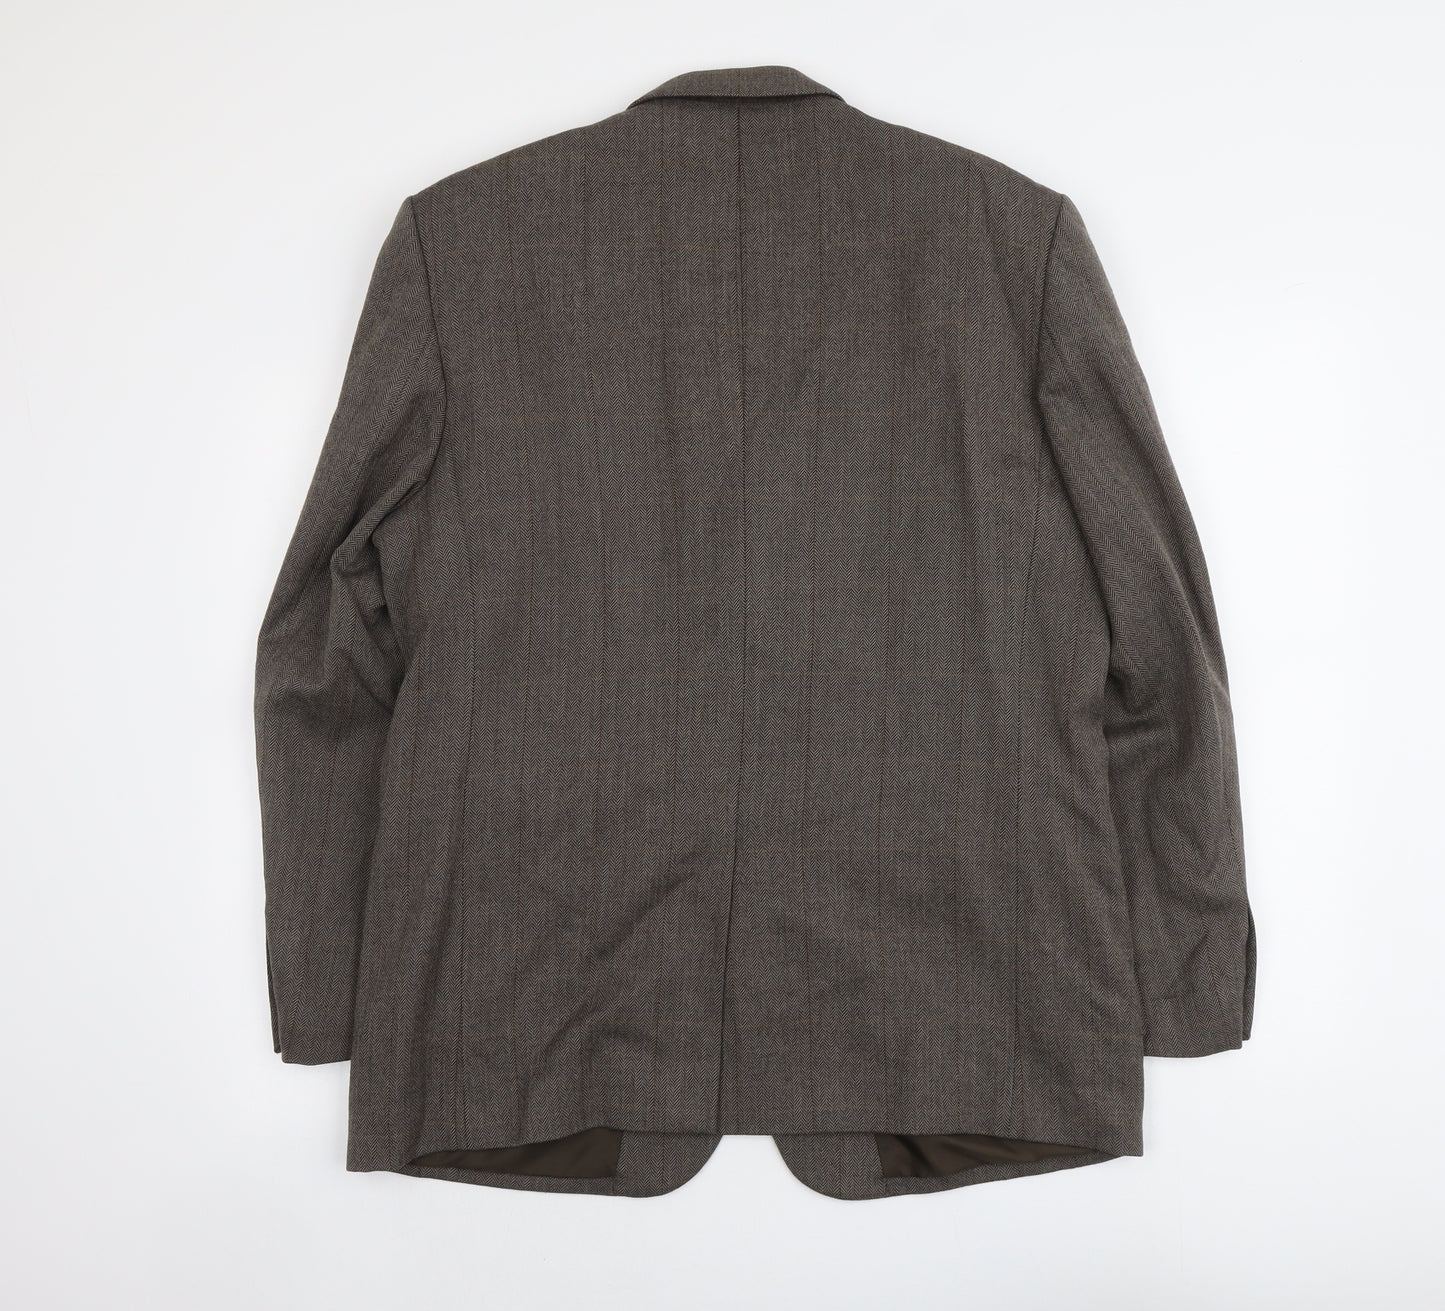 BHS Mens Brown Herringbone Wool Jacket Suit Jacket Size M Regular